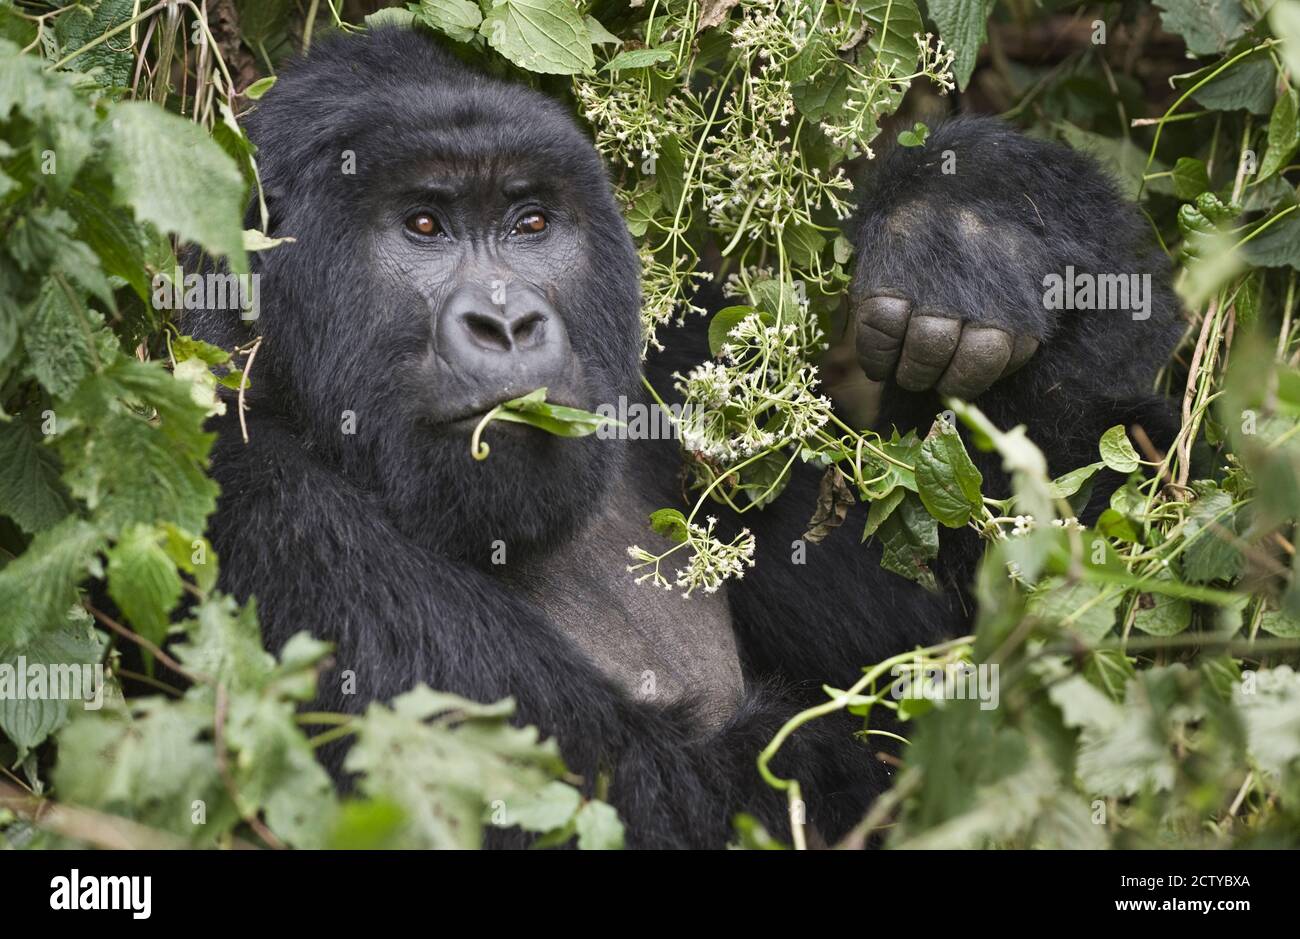 Close-up of a Mountain gorilla (Gorilla beringei beringei) eating leaf, Rwanda Stock Photo